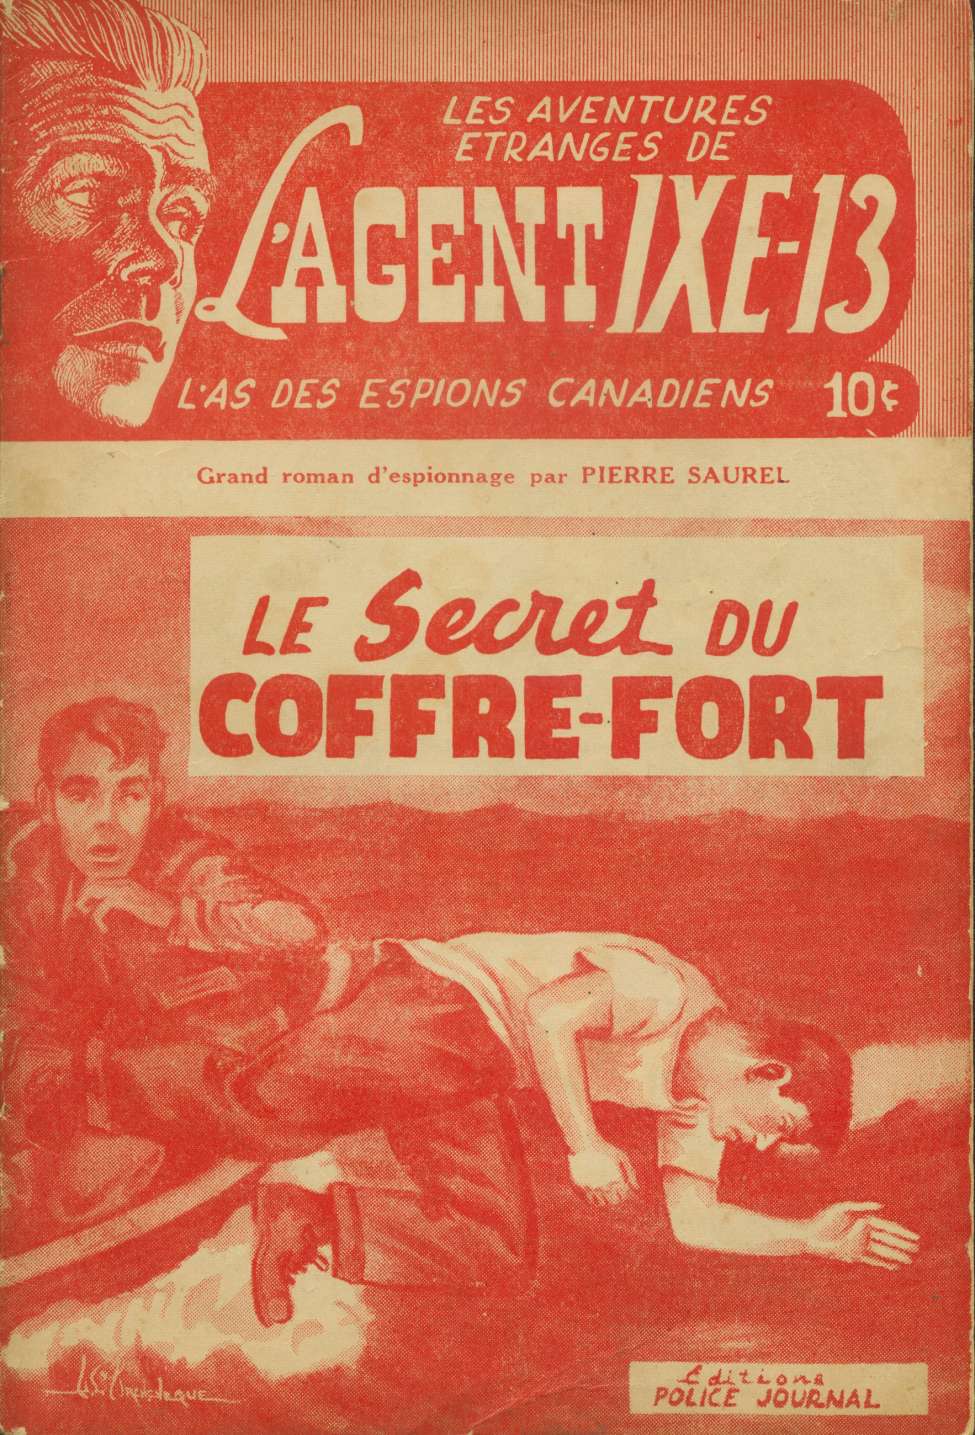 Book Cover For L'Agent IXE-13 v1 6 - Le secret du coffre-fort